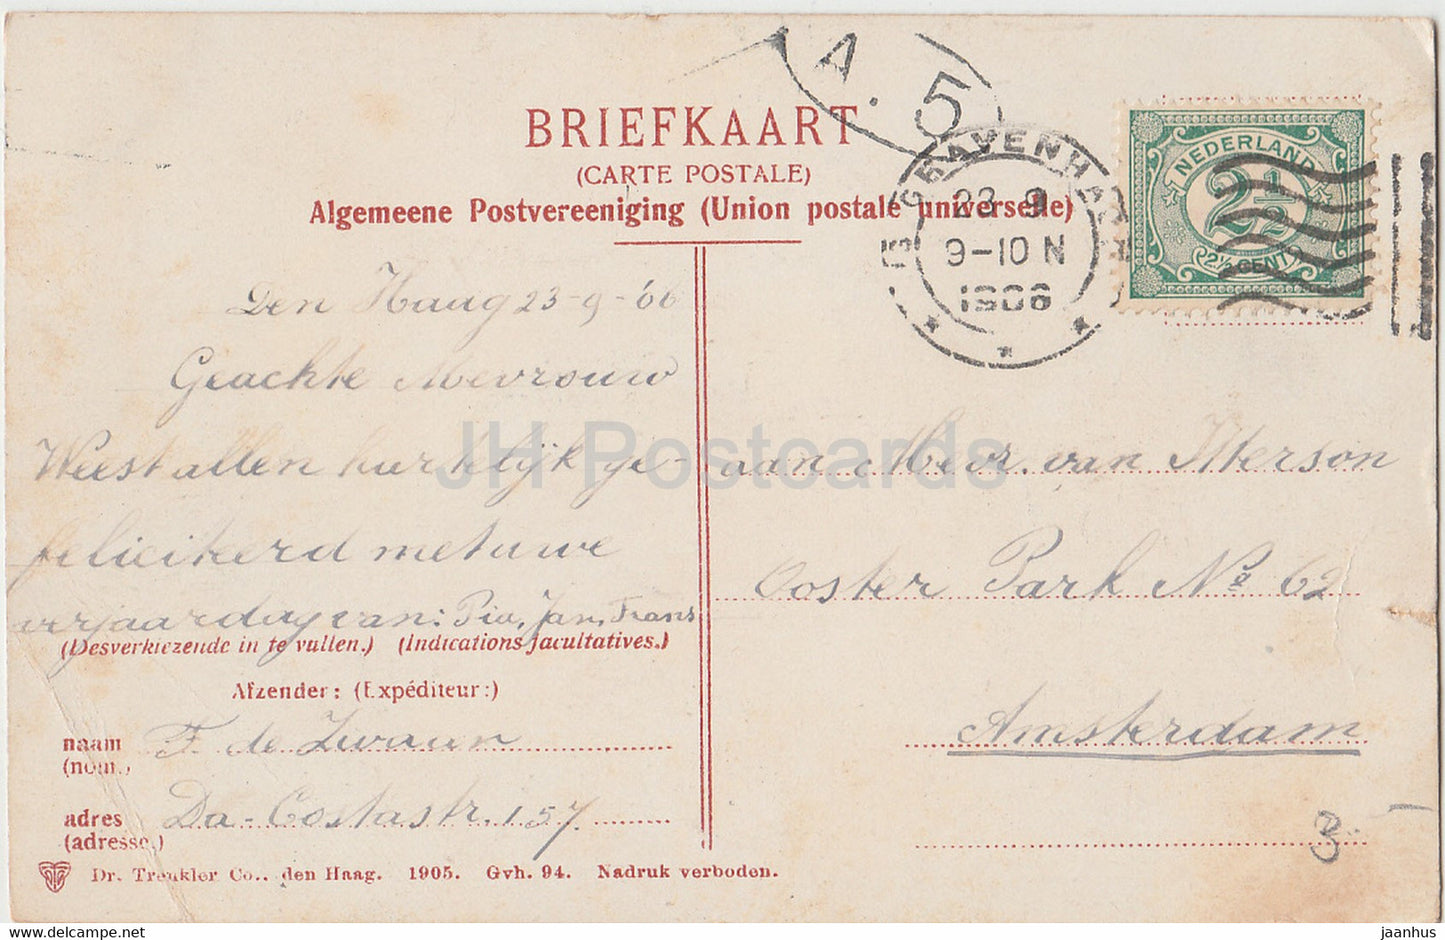 S Gravenhage - Interieur van de Ridderzaal - 2320 - carte postale ancienne - 1906 - Pays-Bas - utilisé